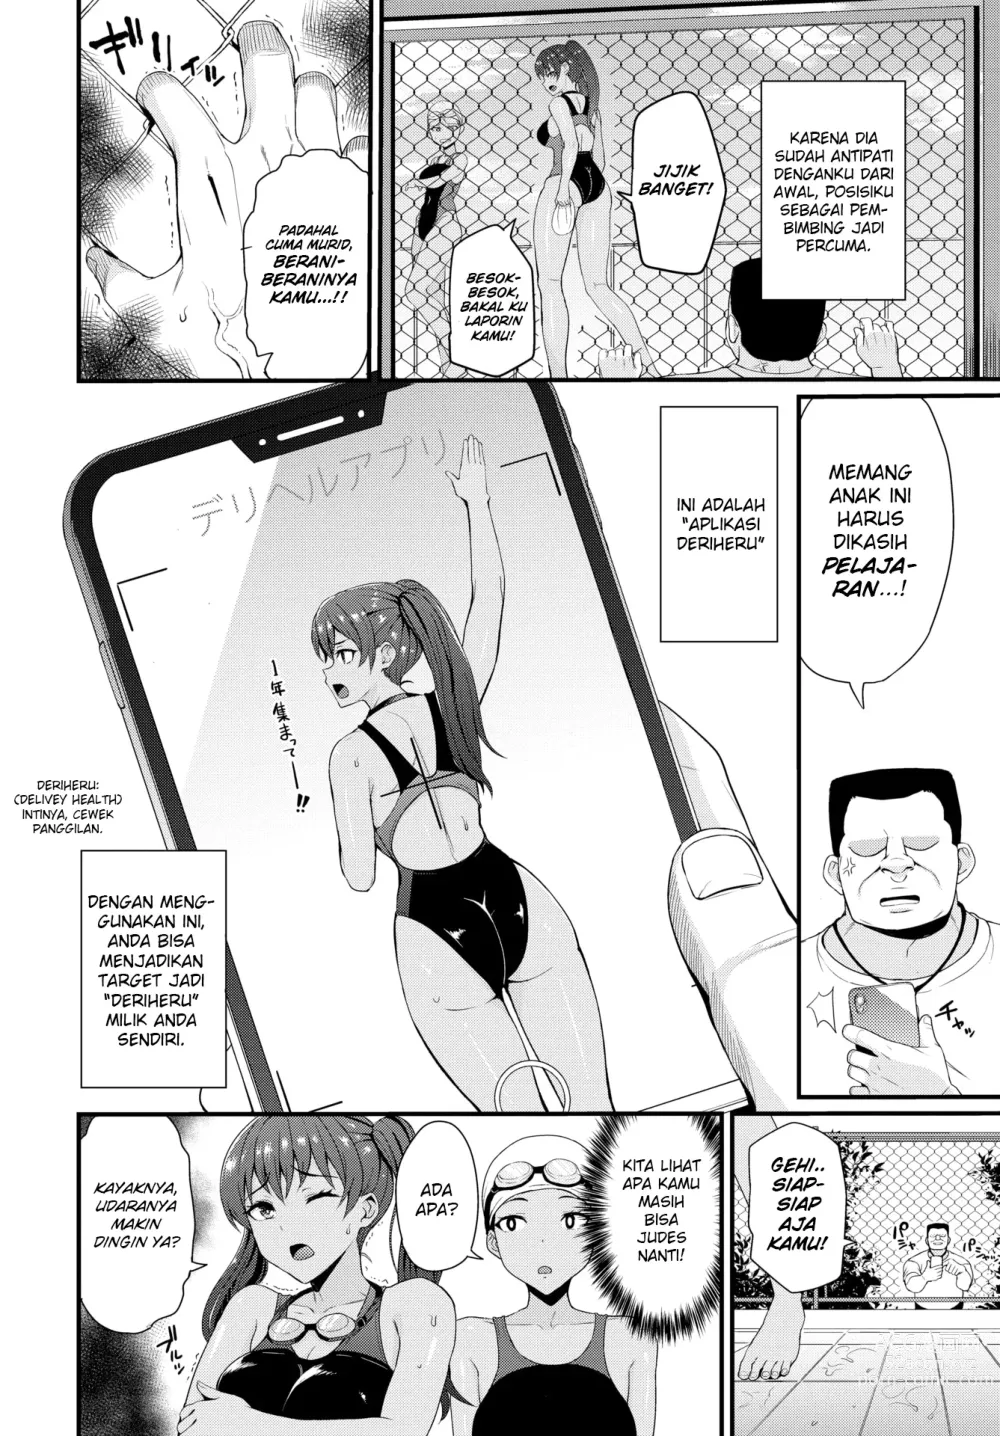 Page 2 of manga Ayo KIta Mulai! DeriLife 2